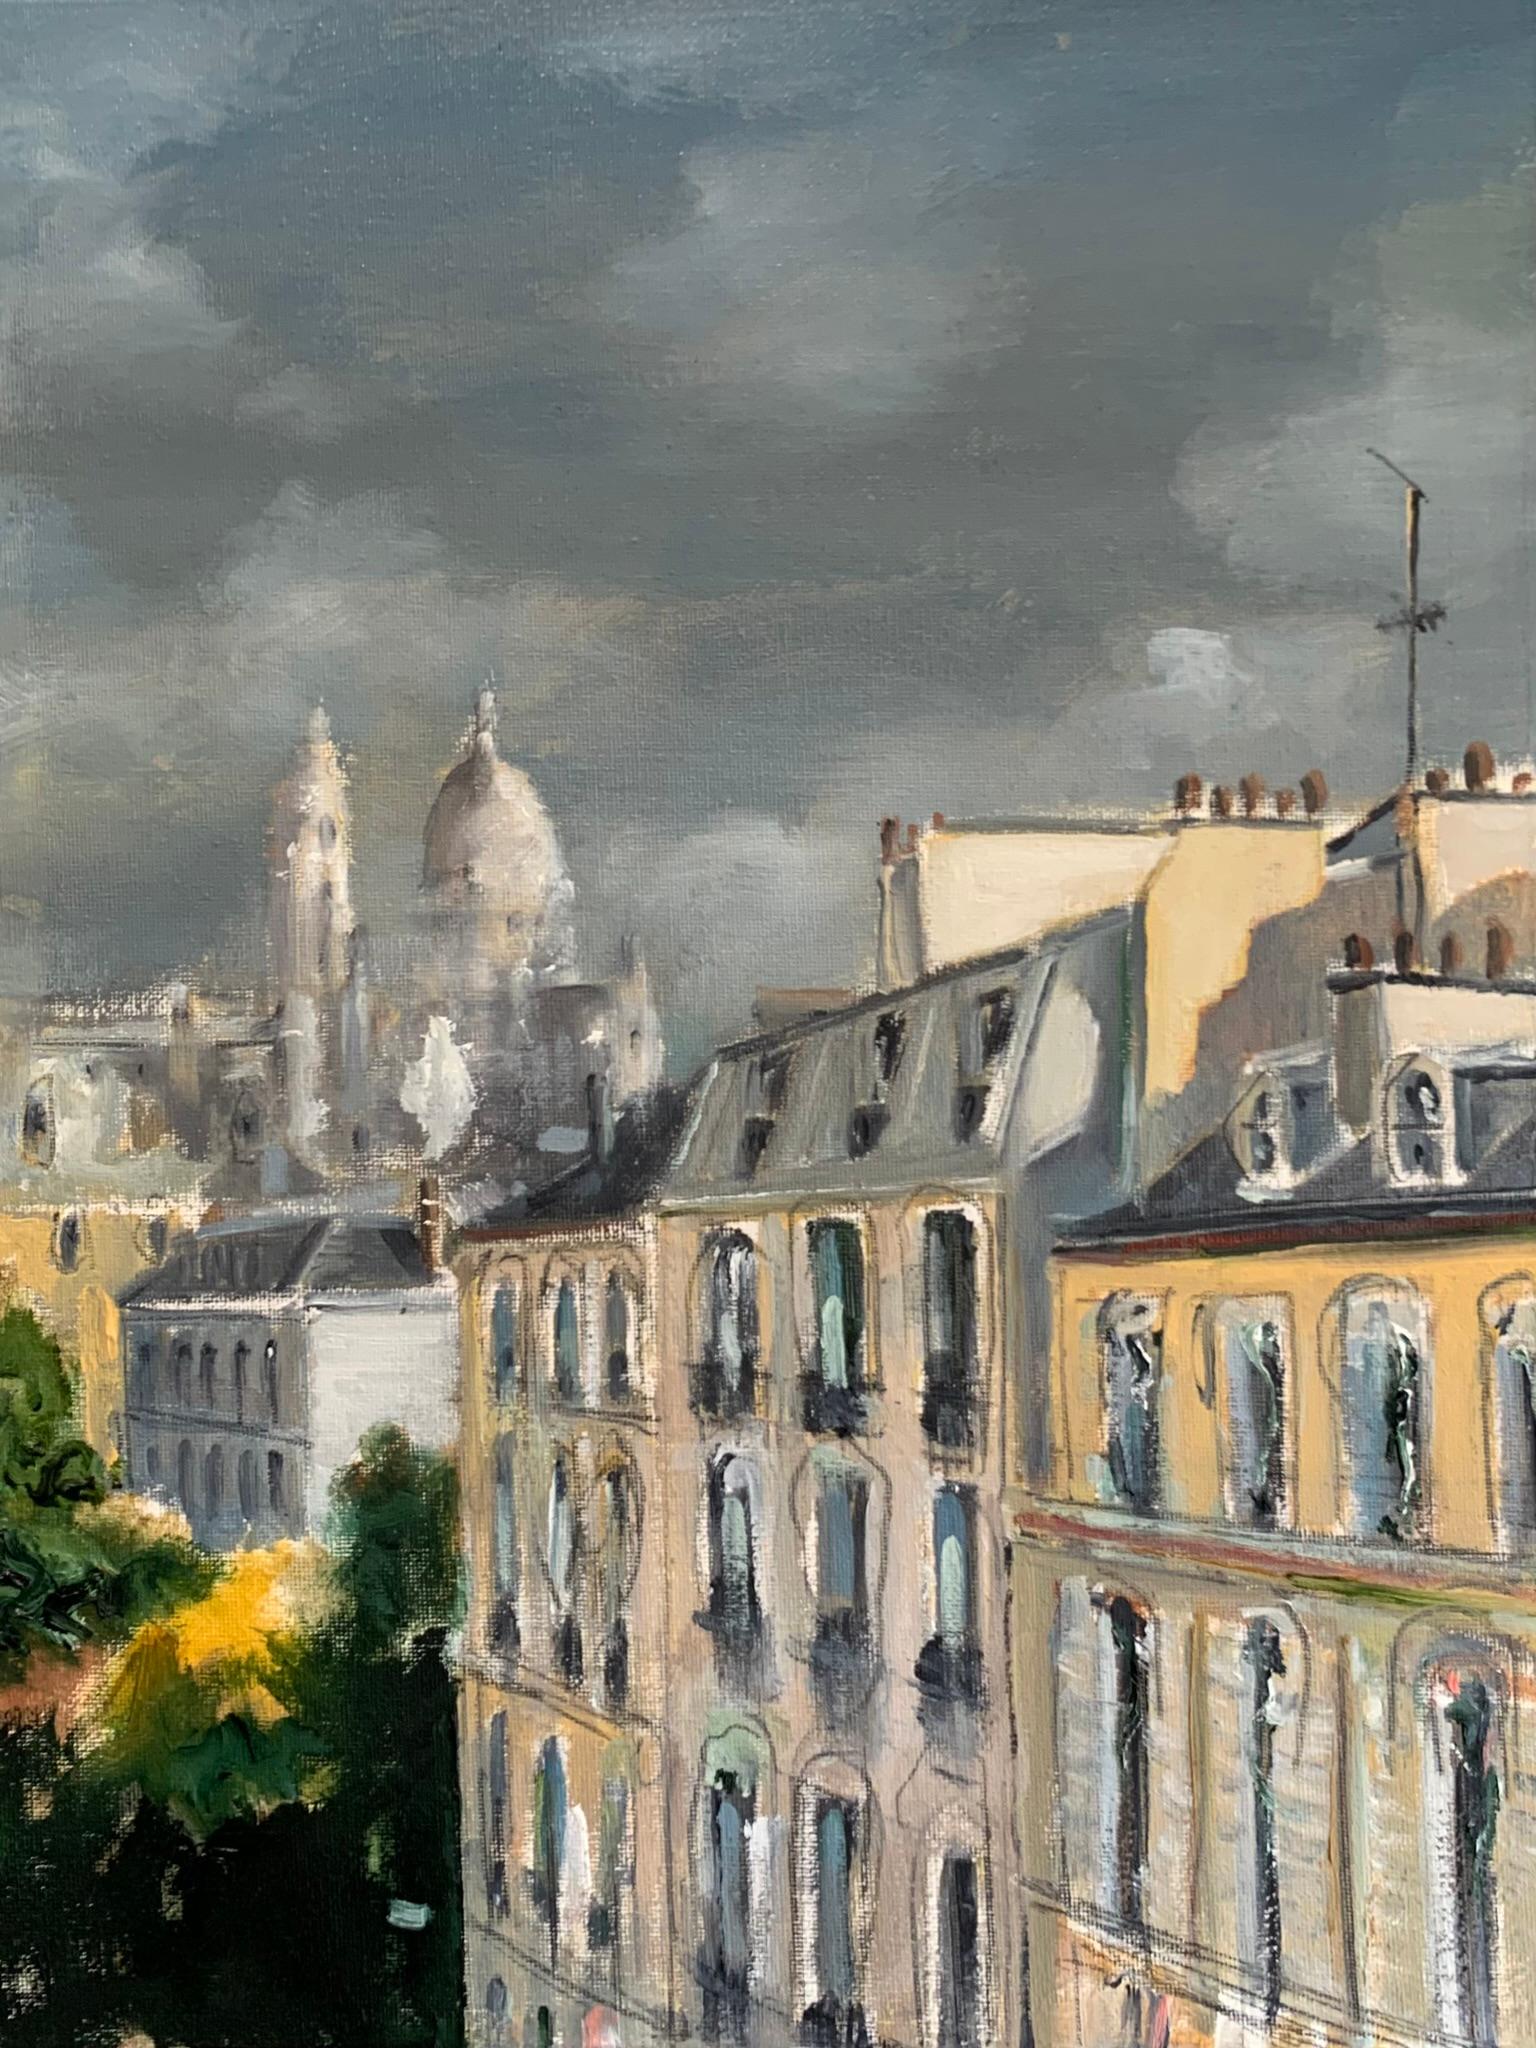 Figurative Painting Adam De Ville - Boulevard bleu urbain, paysage, peinture à l'huile, ville, rues de Paris, romantique 